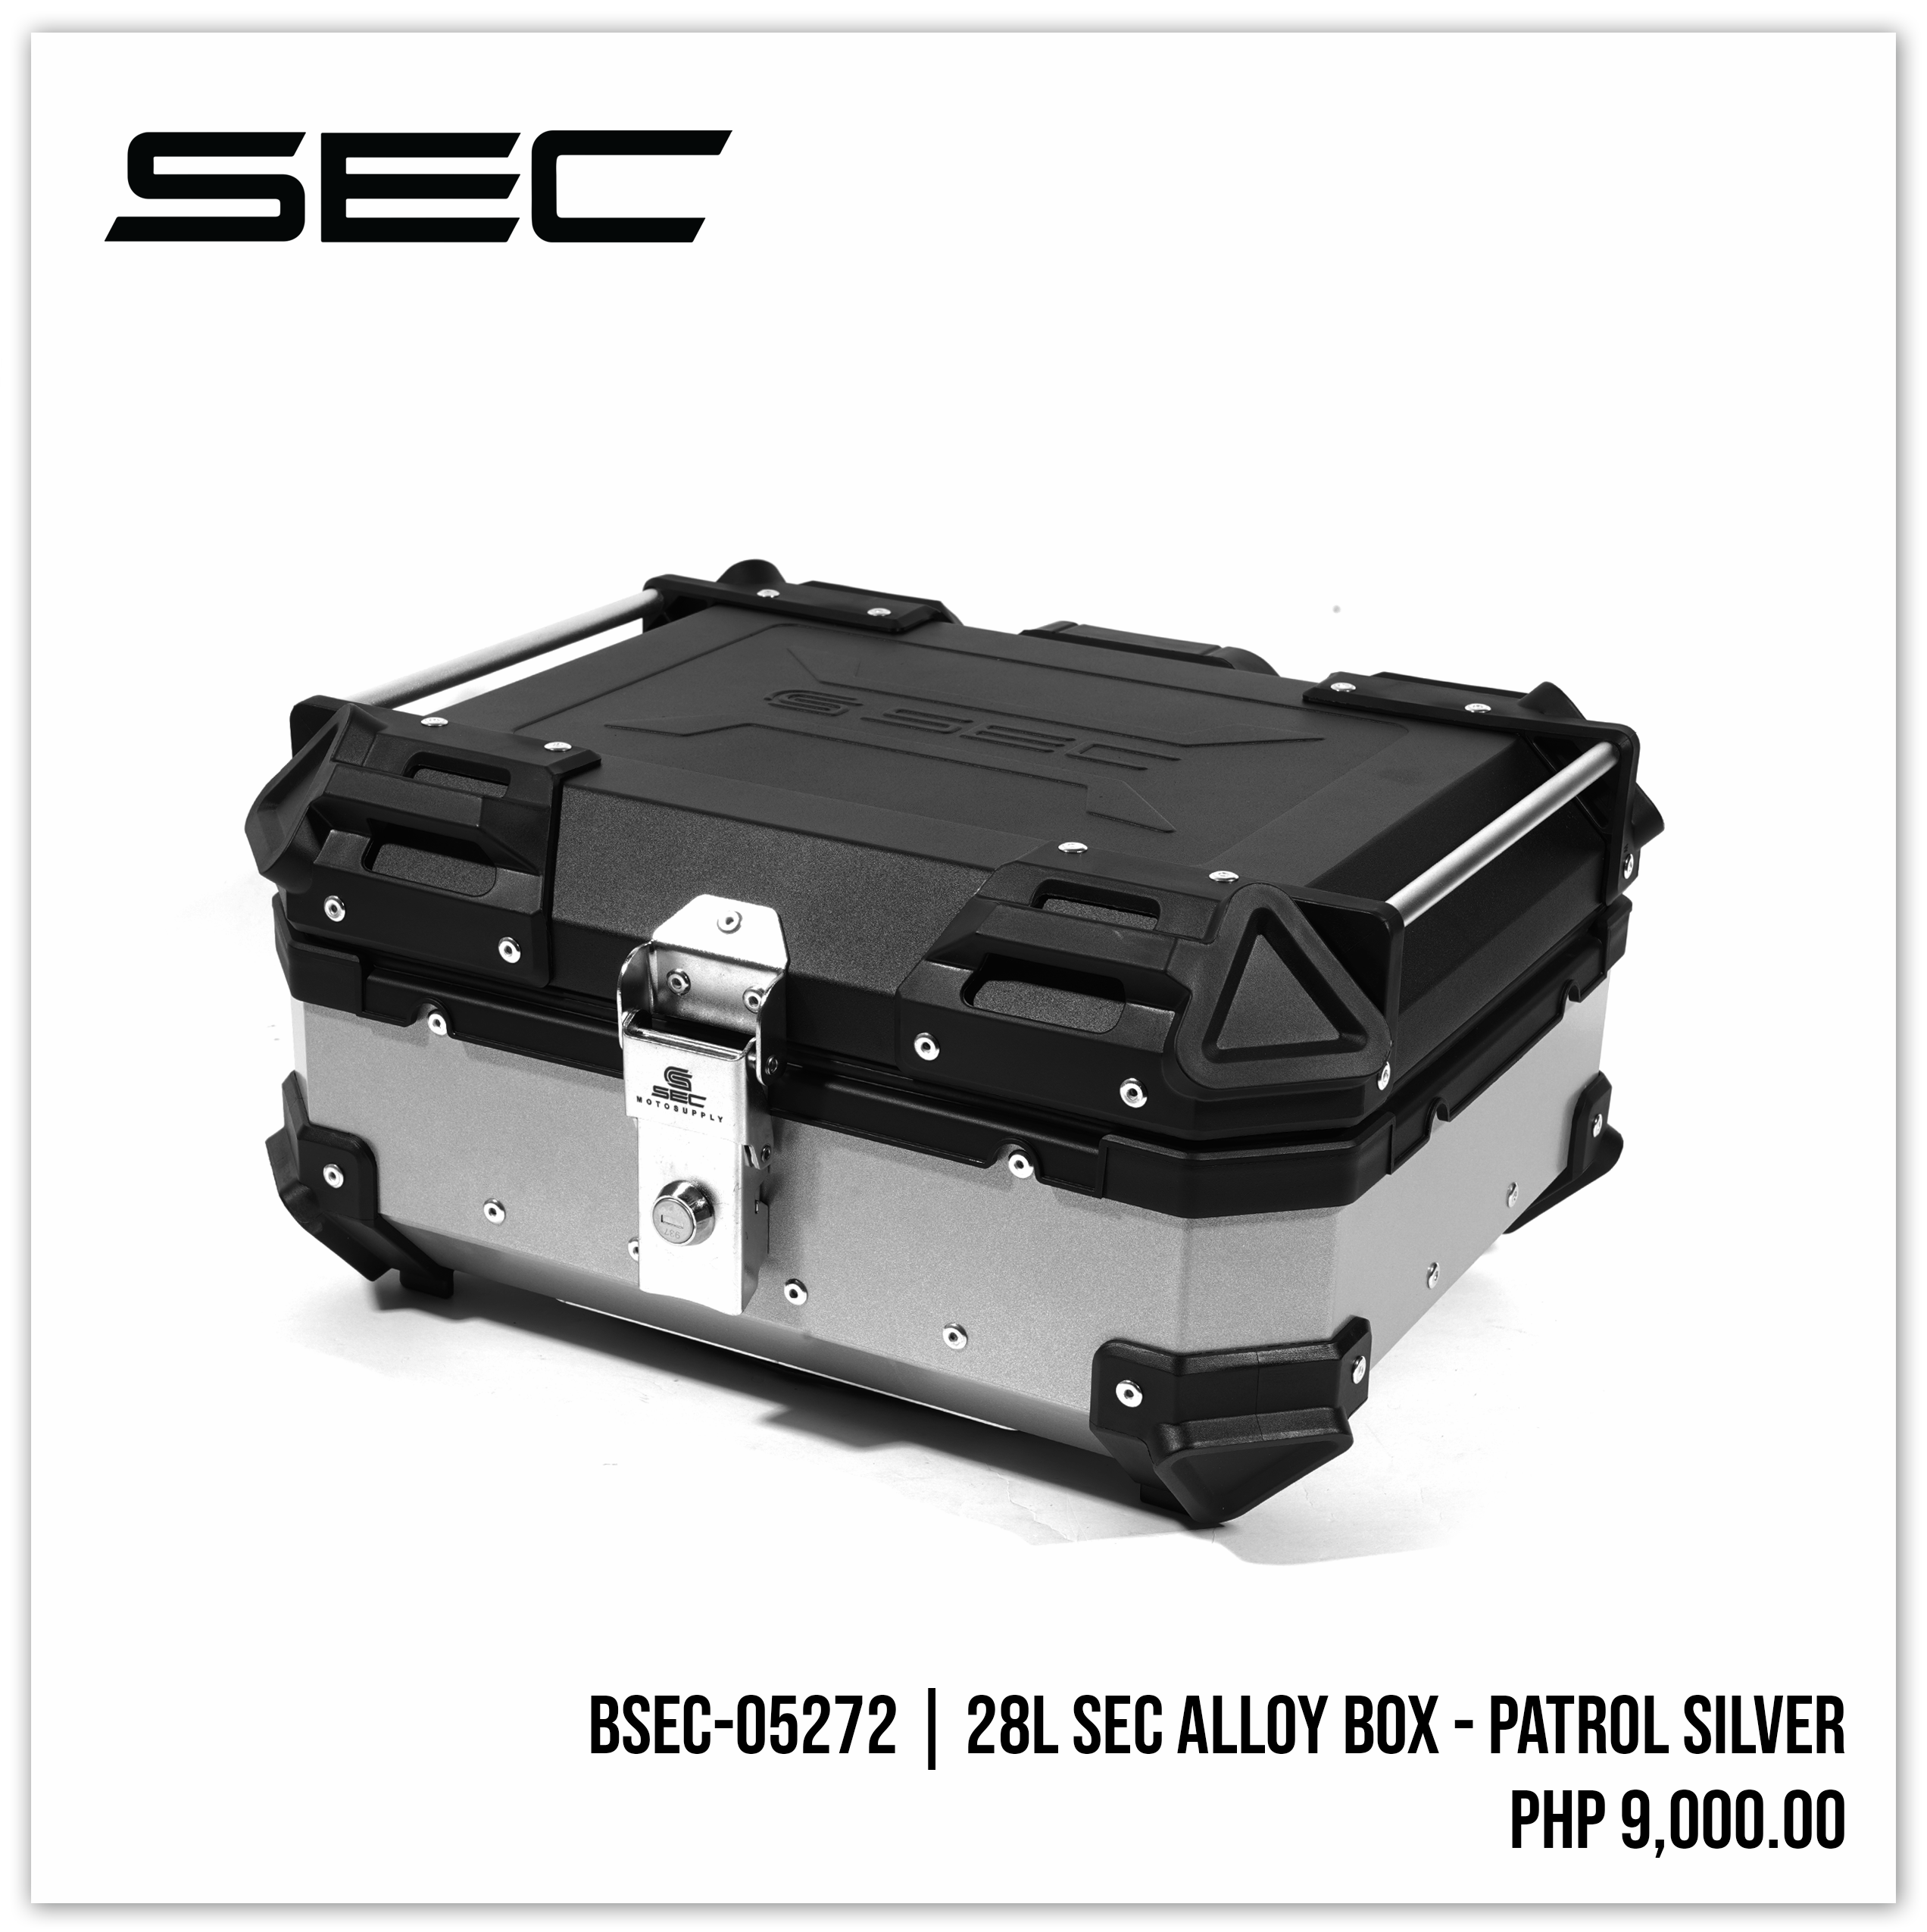 28L SEC Alloy Box - Patrol Silver